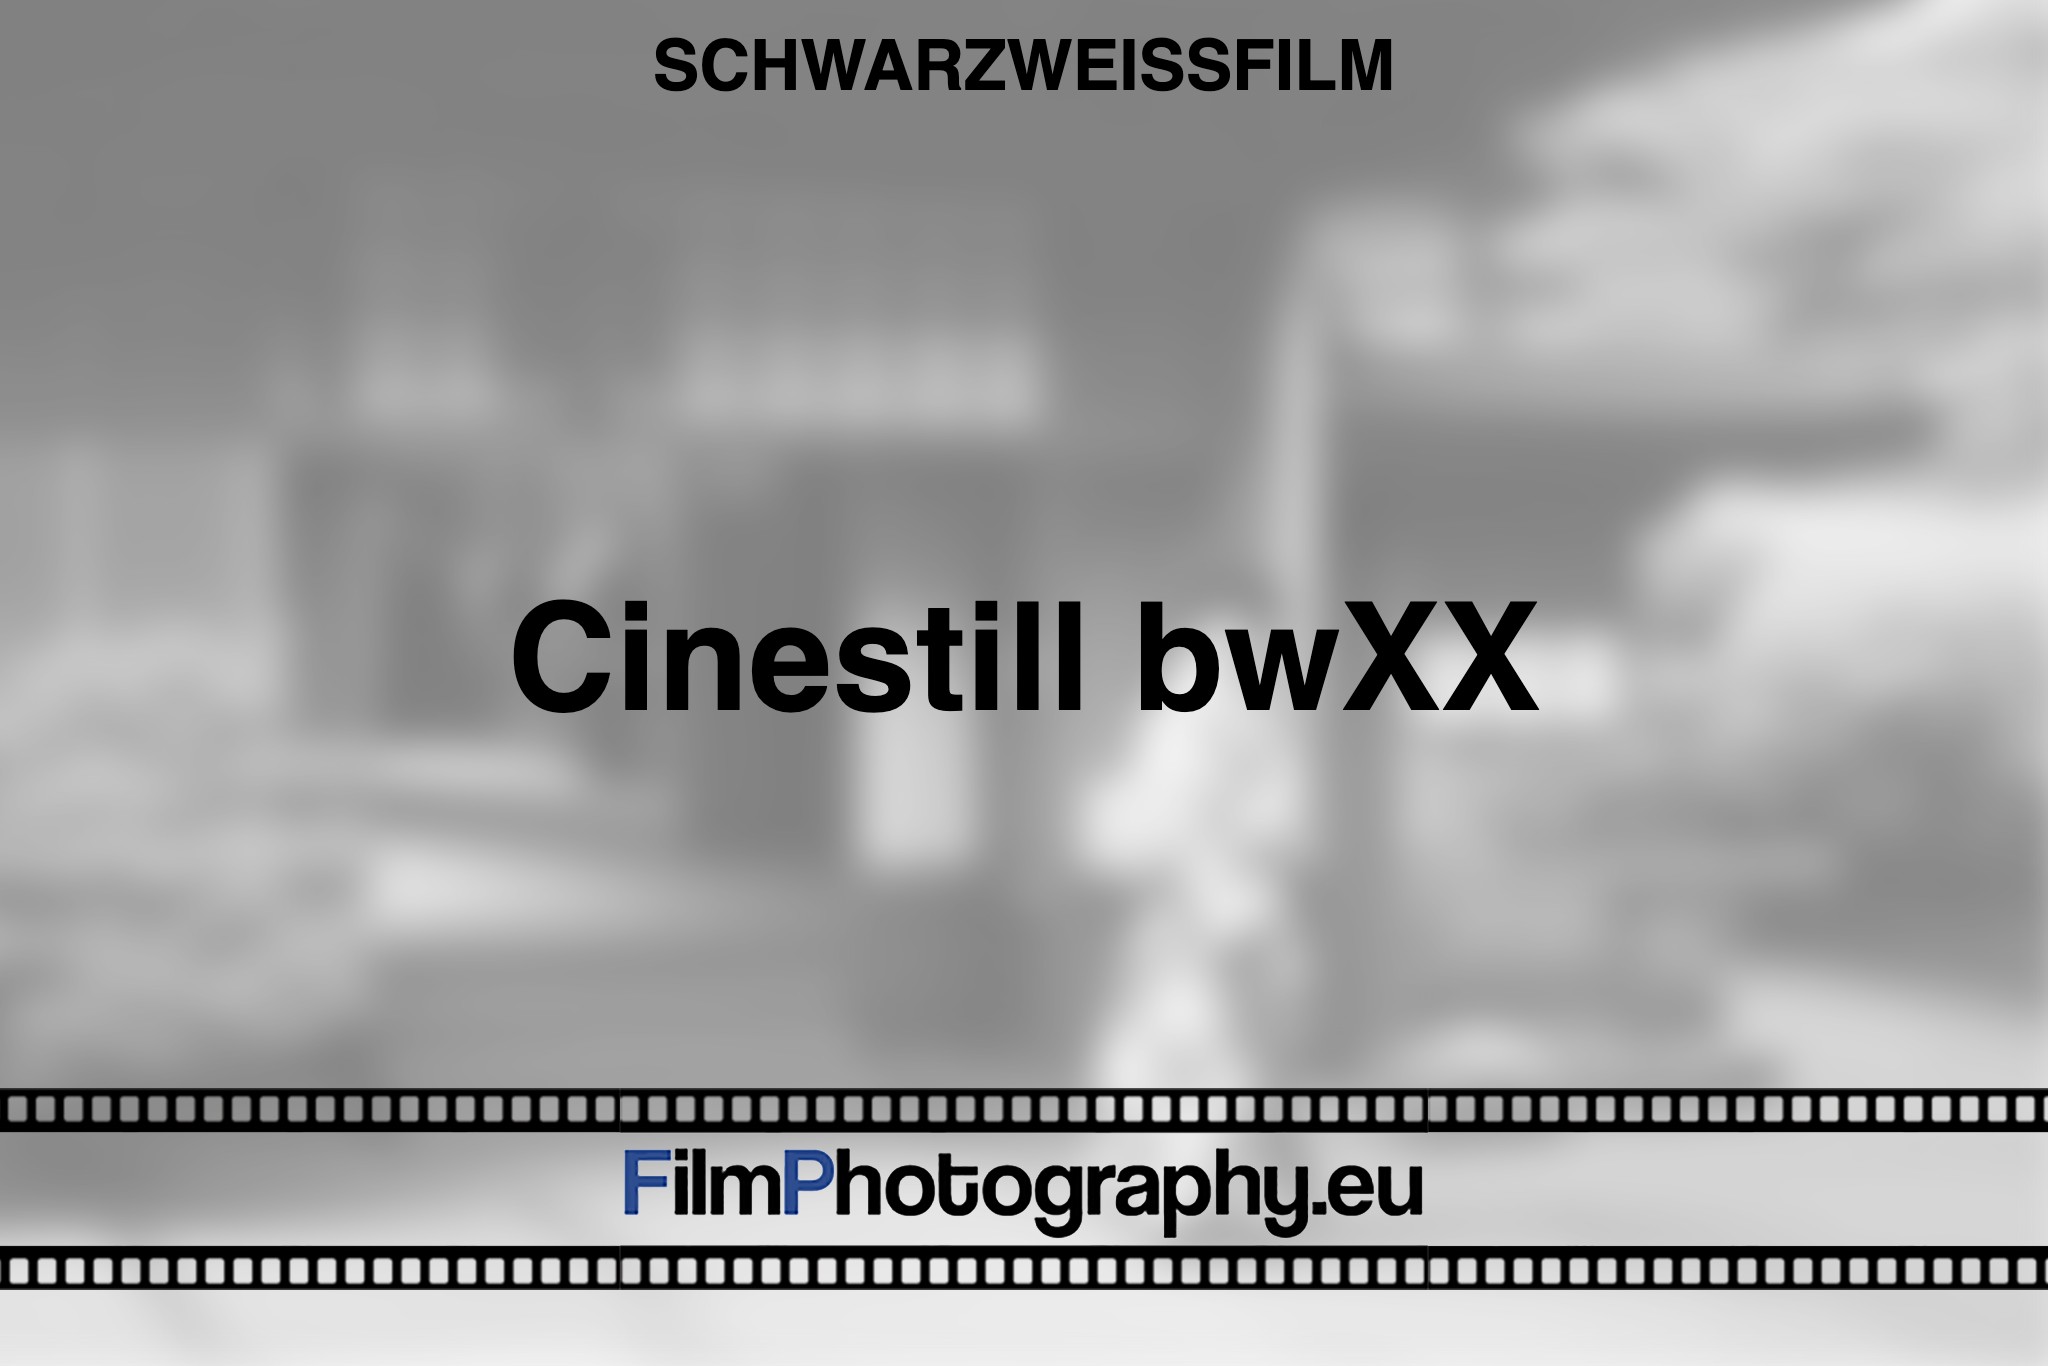 cinestill-bwxx-schwarzweißfilm-bnv